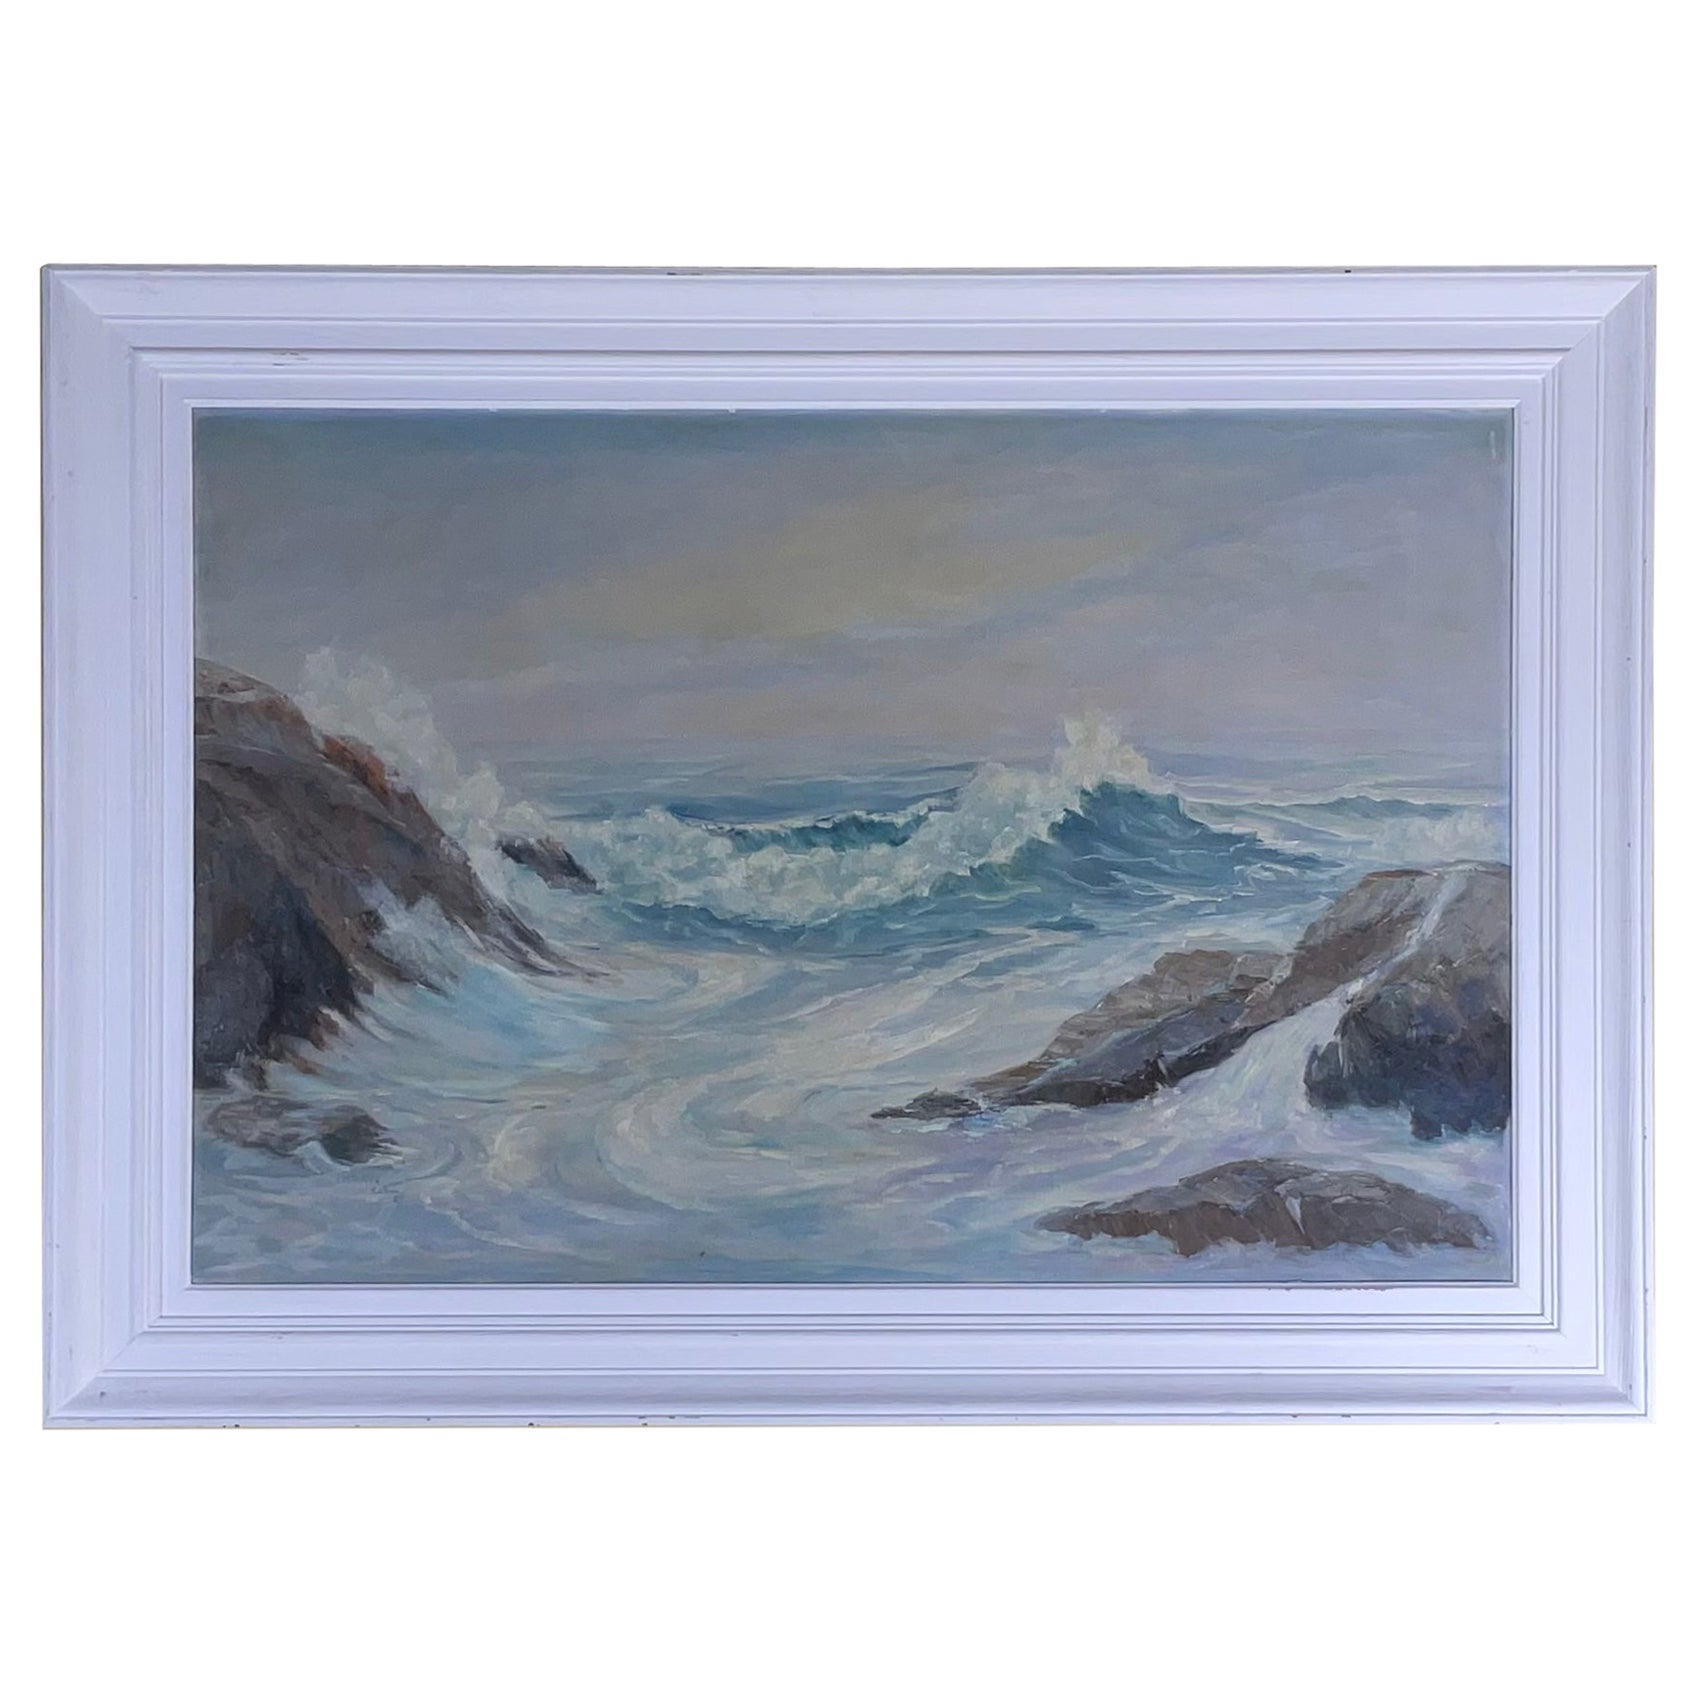 Vintage - Stormy Seascape Peinture à l'huile sur toile